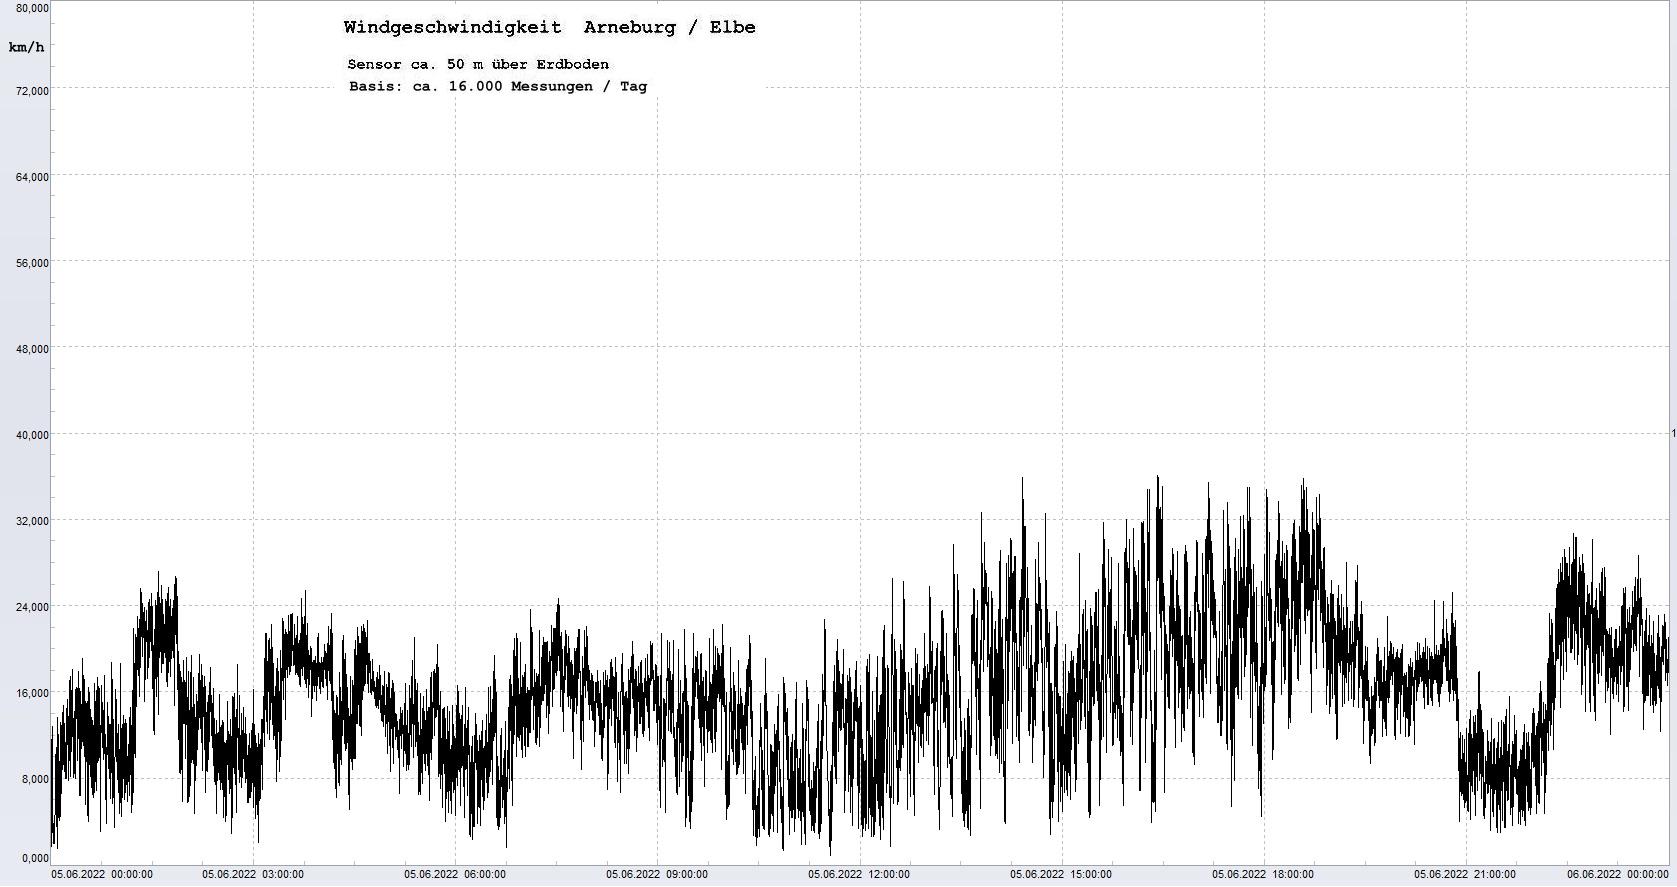 Arneburg Tages-Diagramm Winddaten, 05.06.2022
  Diagramm, Sensor auf Gebude, ca. 50 m ber Erdboden, Basis: 5s-Aufzeichnung